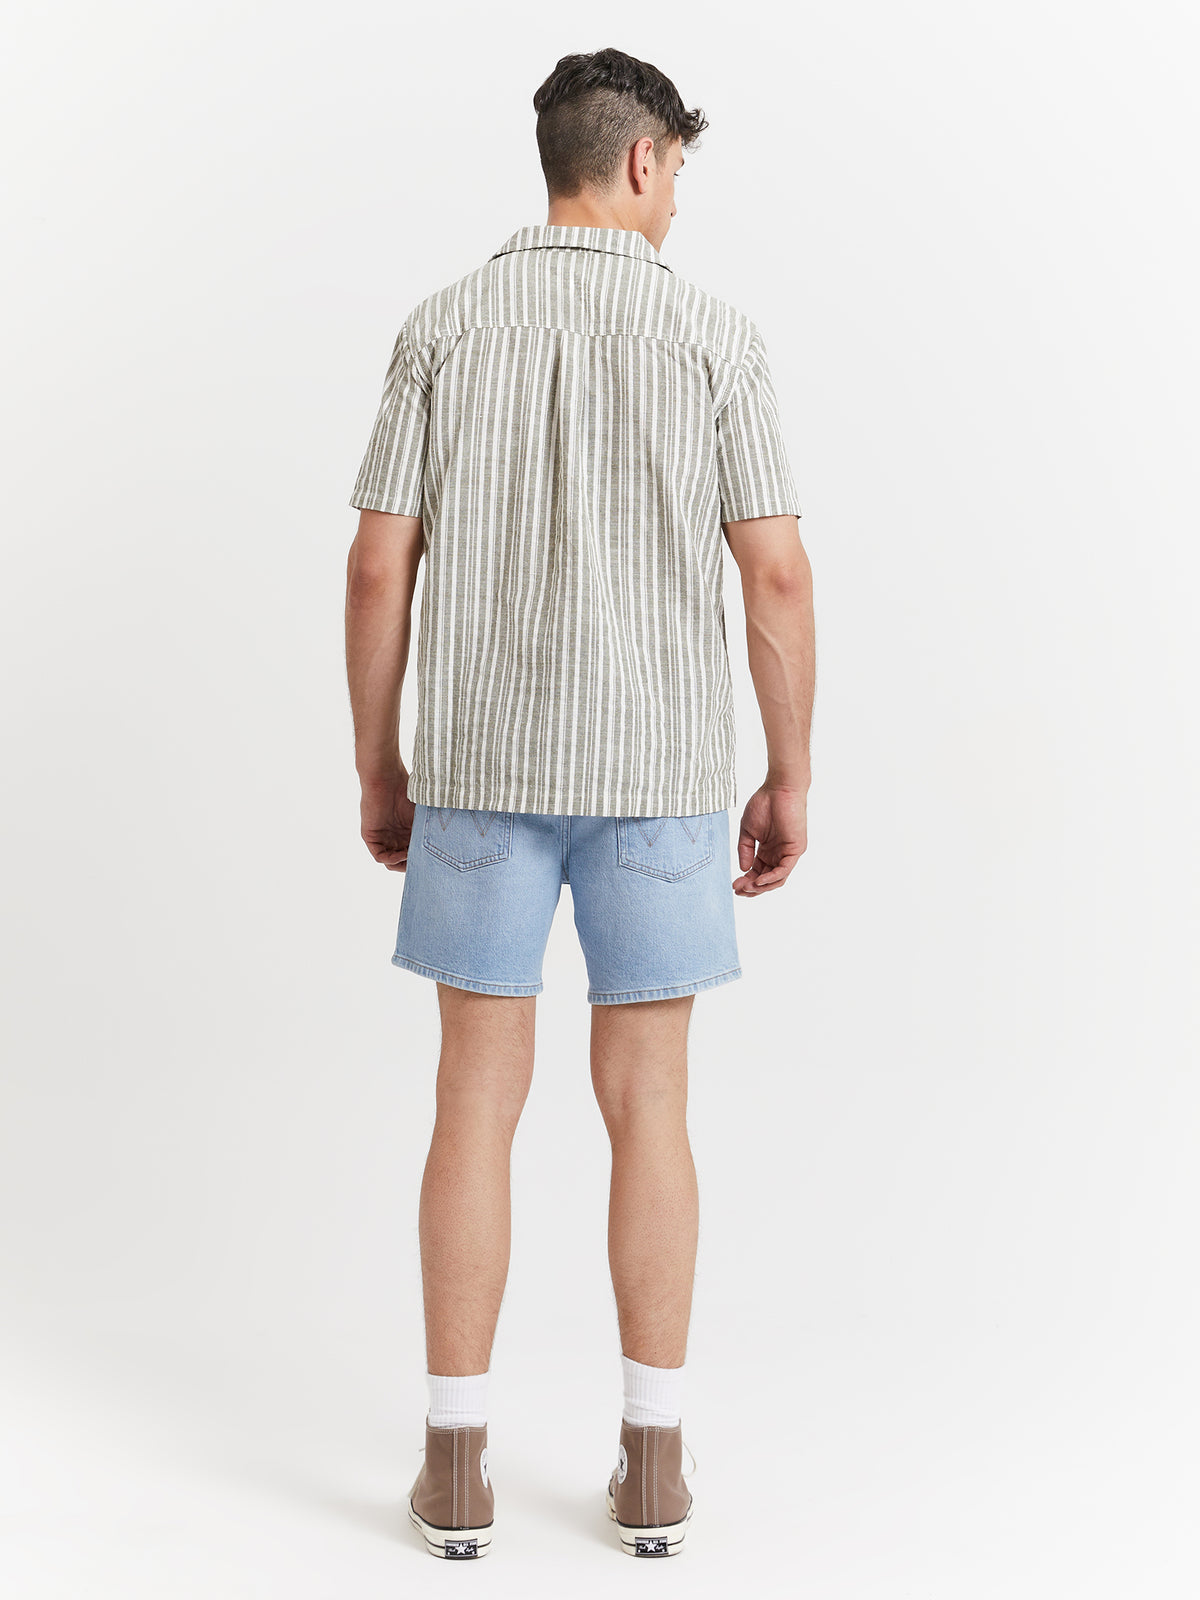 Resort Shirt - Sage Stripe